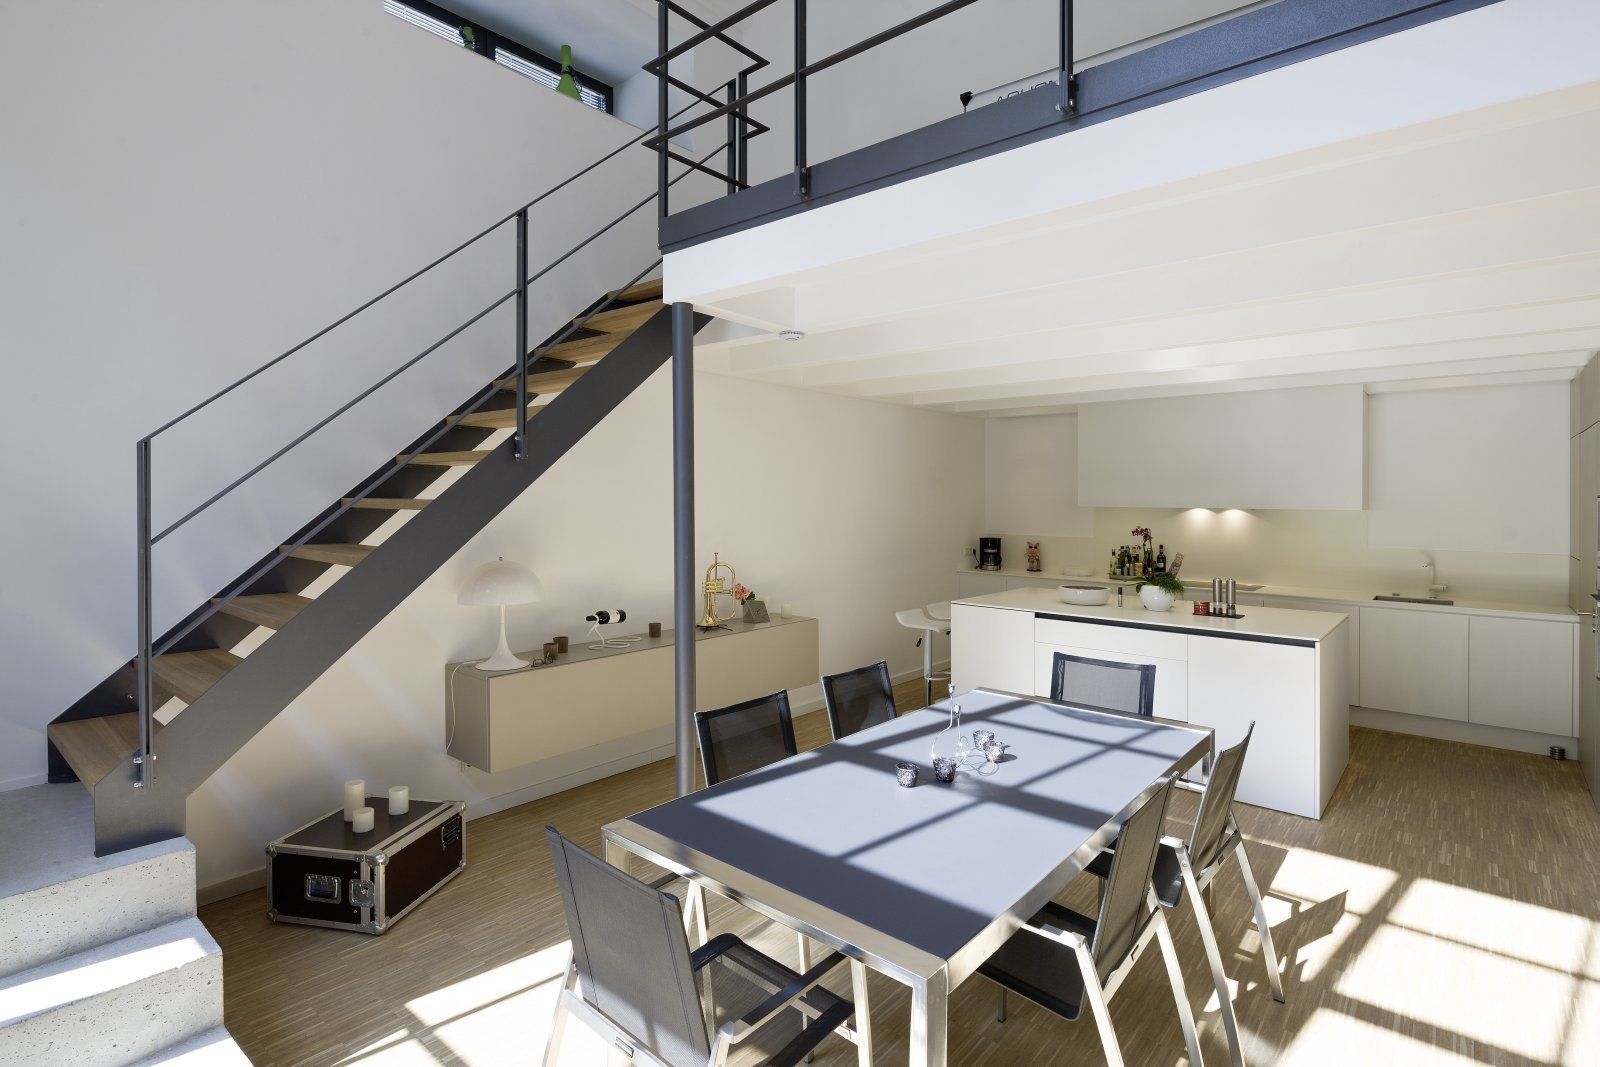 Lofts - Tuchfabrik, Hauser - Architektur Hauser - Architektur Industrial style dining room